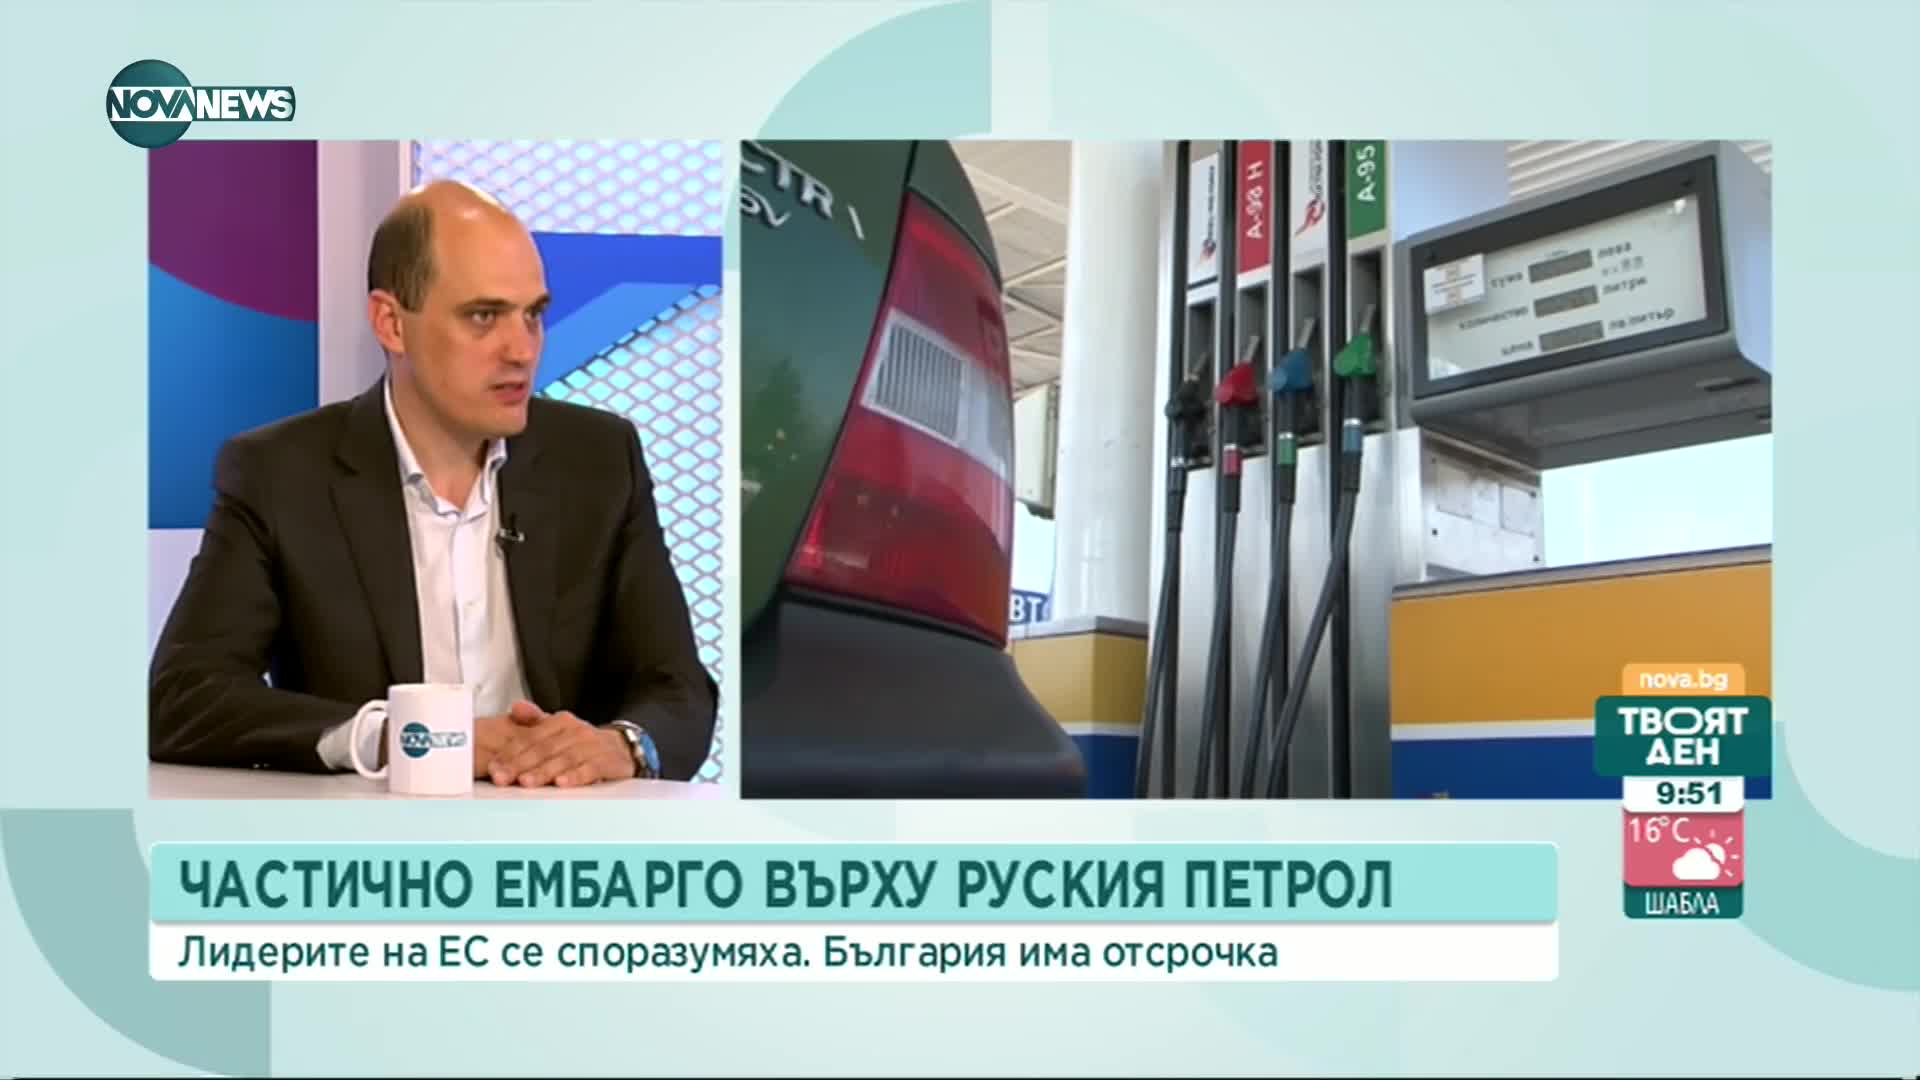 Данаилов: Полагаме максимални усилия, за да запазим конкурентоспособността на бизнеса